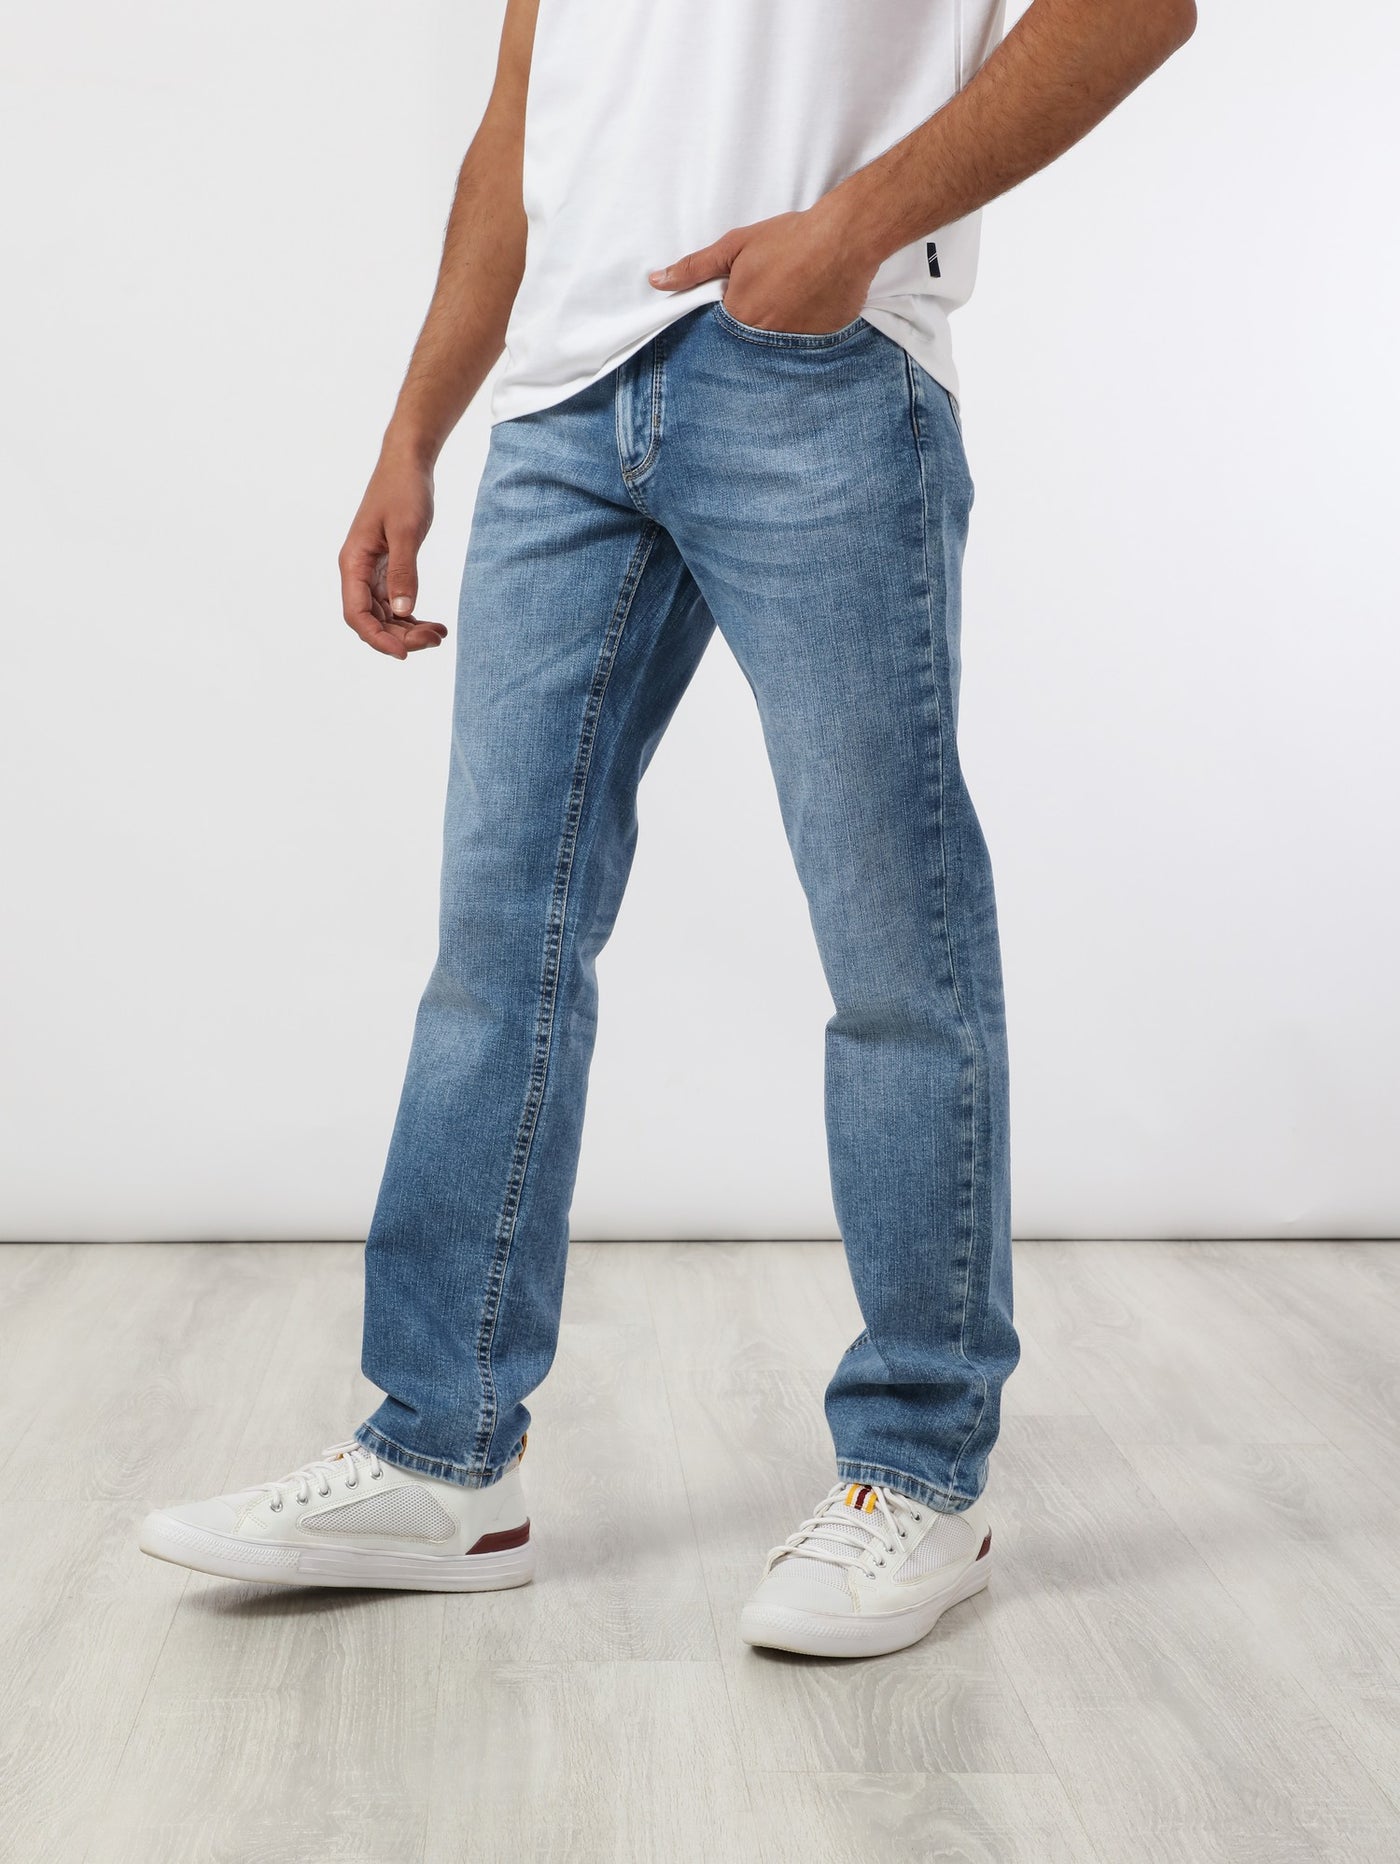 Denim Pants - Modern Fit - Washed Effect